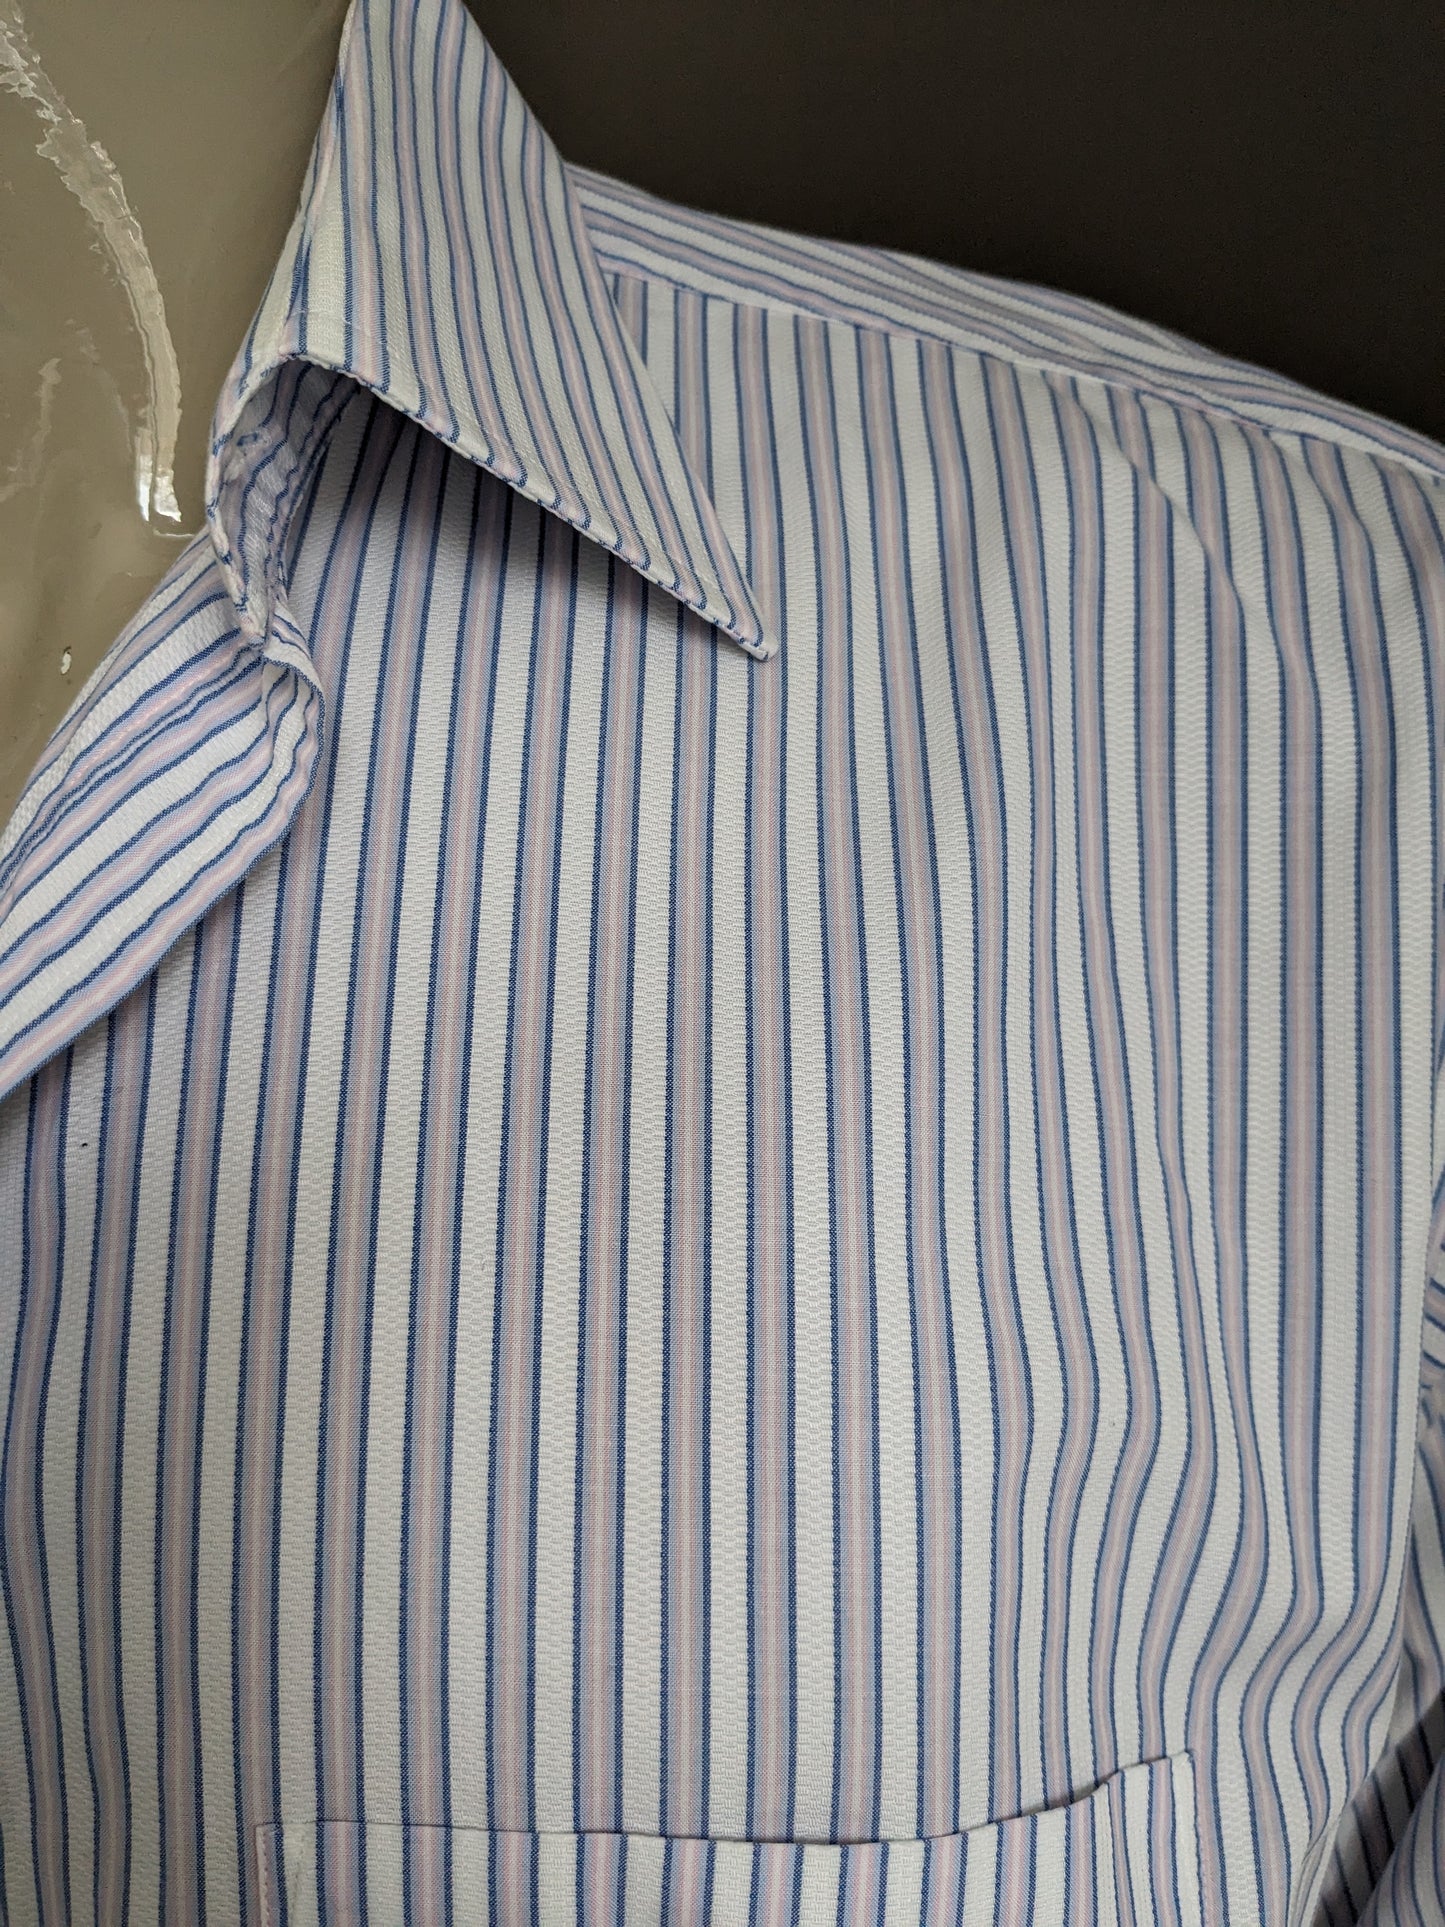 Vintage Arrow shirt. Blue pink white striped. Size XL.